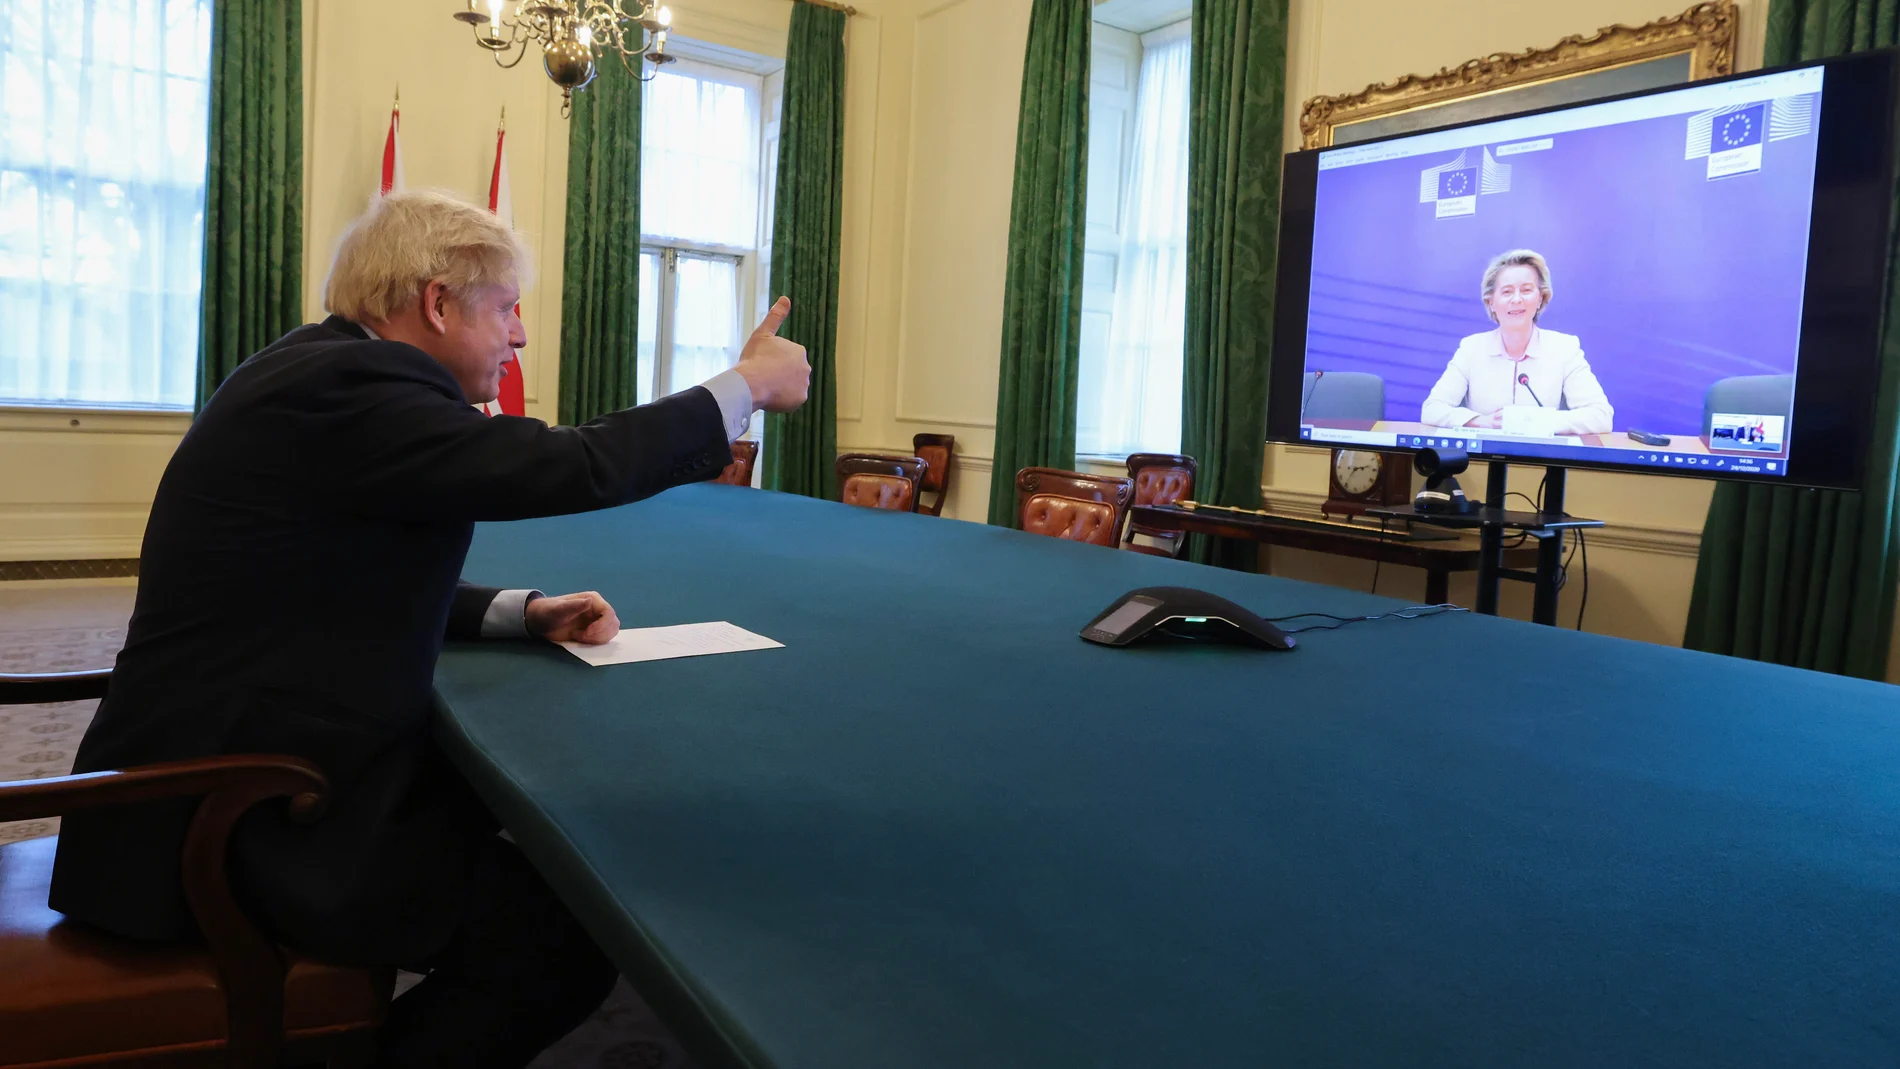 Una foto para la historia: Boris Johnson levanta el dedo felicitándose del acuerdo en videoconferencia con Ursula von der Leyen.